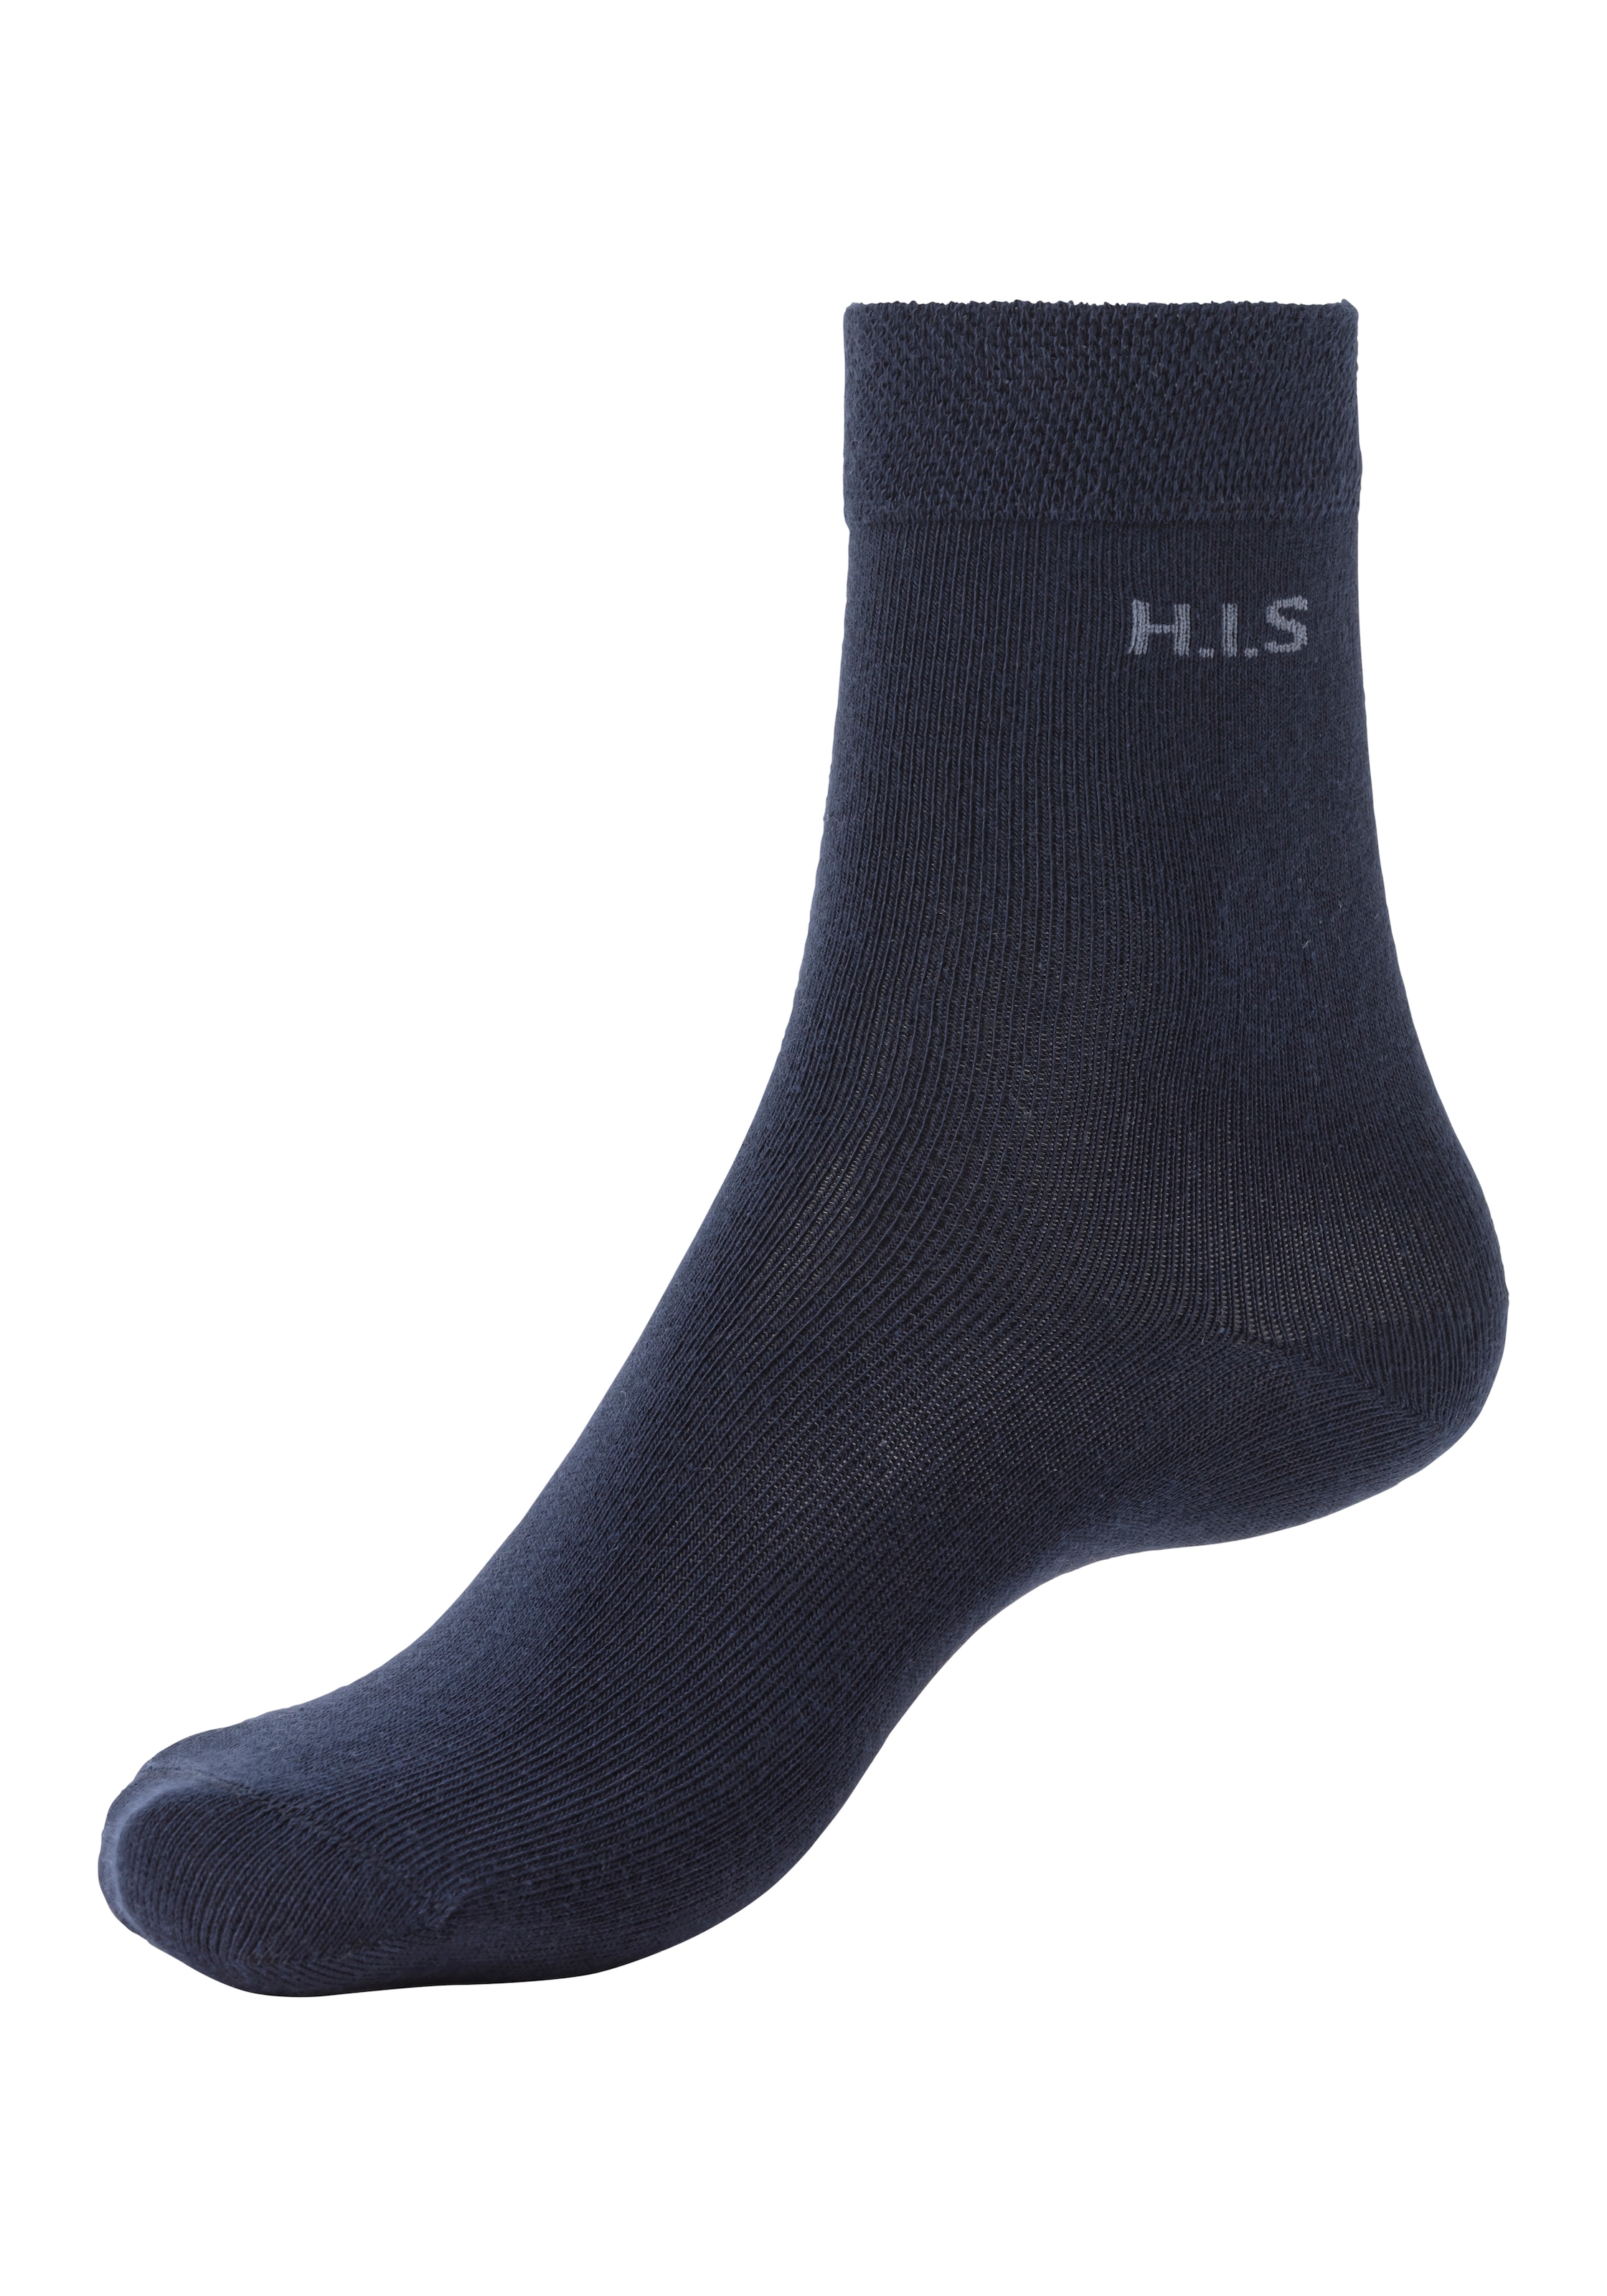 H.I.S Socken, Bündchen Schweiz shoppen ohne Jelmoli-Versand (Set, 4 Paar), einschneidendes online bei